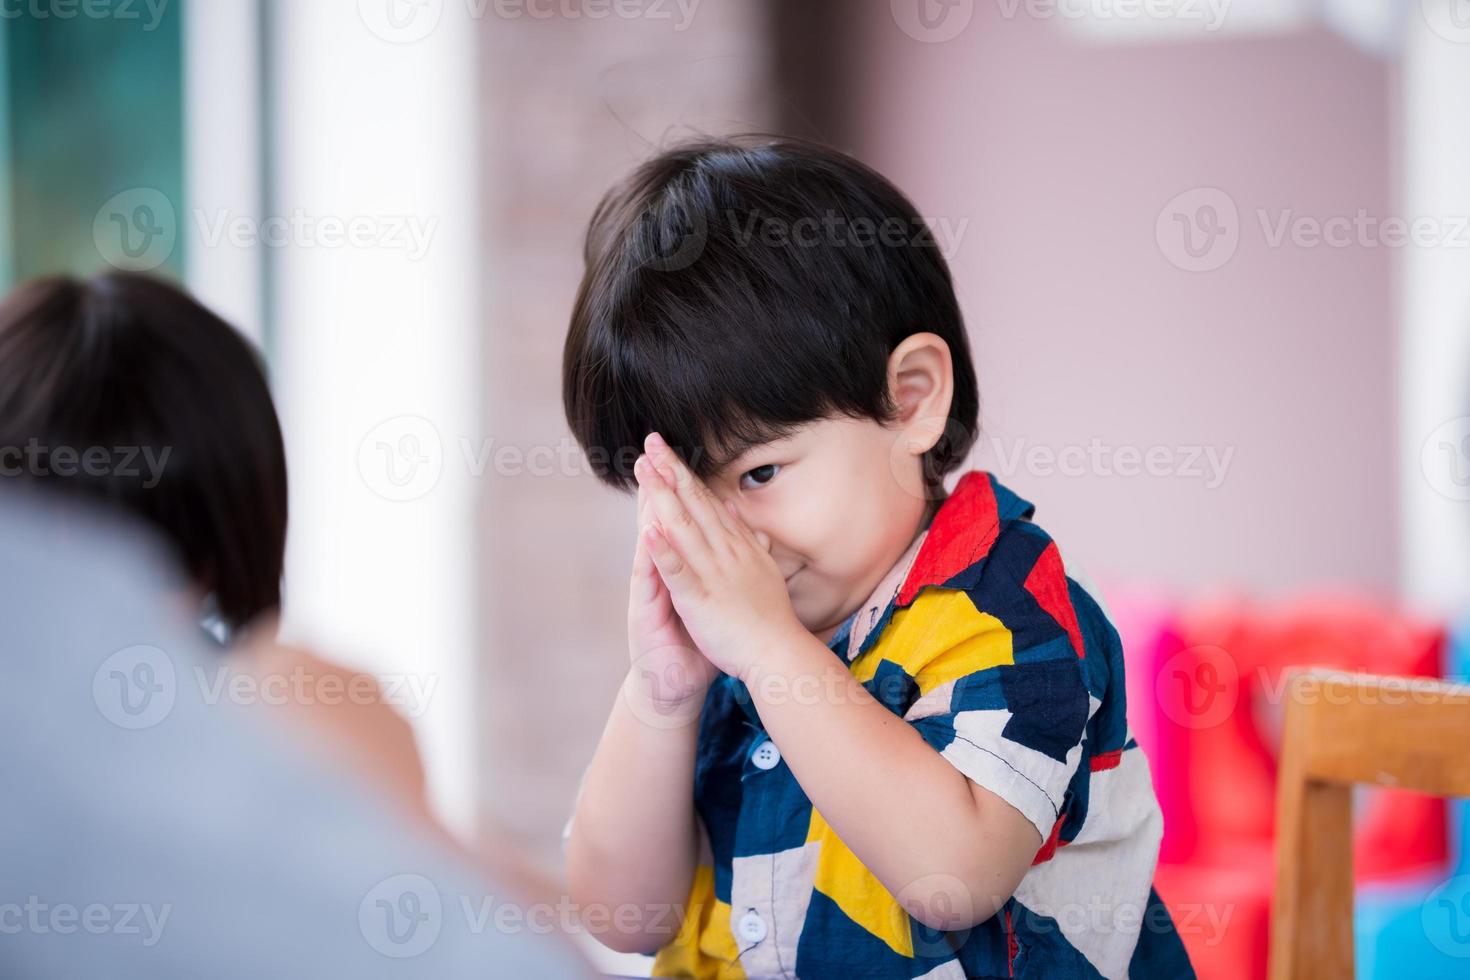 asiatischer Junge hebt die Hände, um Hallo zu sagen, Respekt zu zollen oder Ihnen zu danken. Kind lächelt süß. entzückender sohn im alter von 2-3 jahren, der bunte kleidung trägt. foto